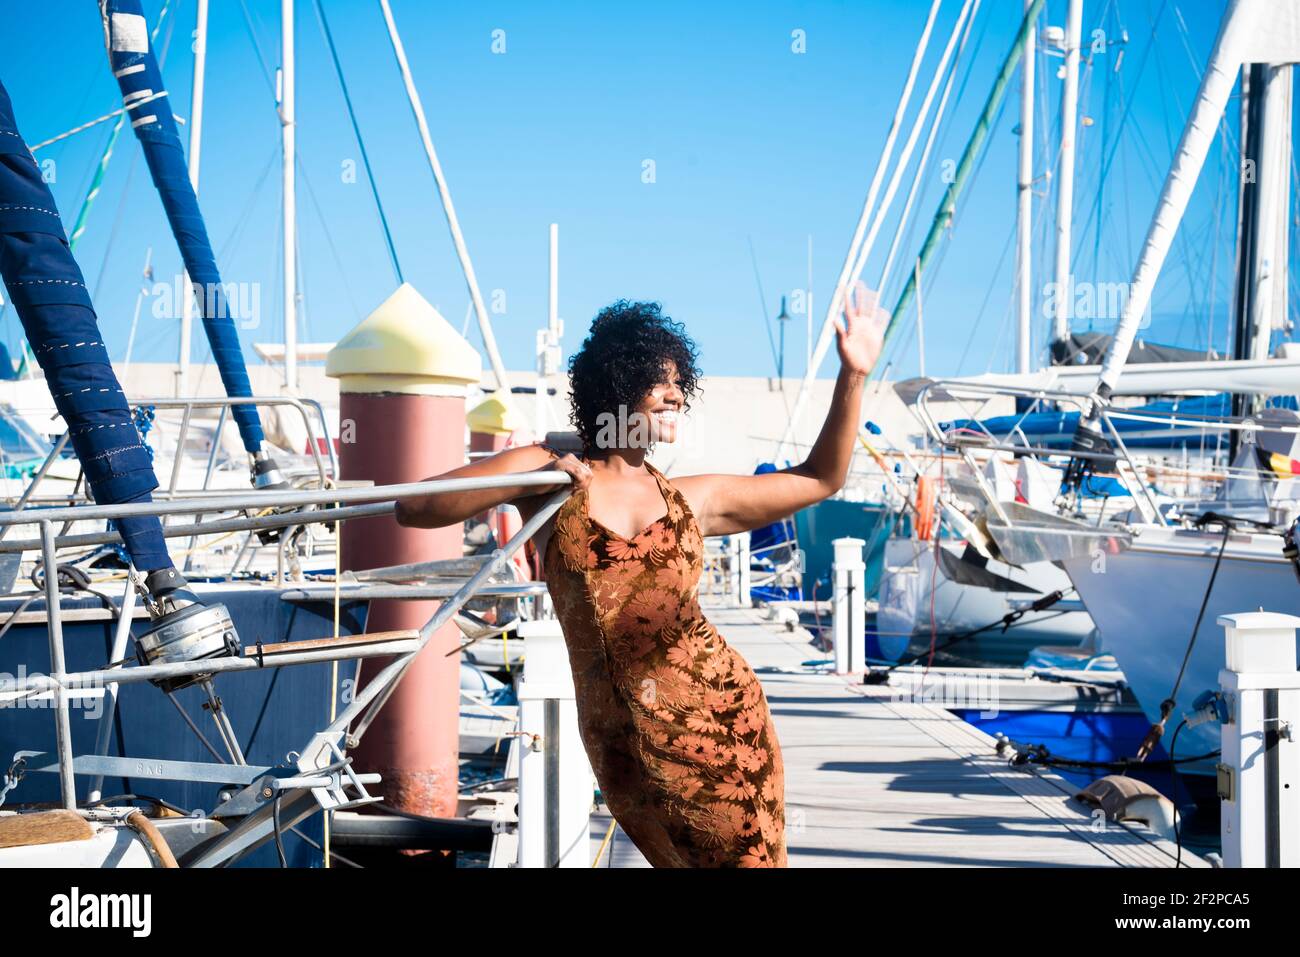 Junge und fröhliche schwarze junge Frau Tourist hallo und genießen Die Boote am Dock - Konzept des Sommerurlaubs Urlaub und Tourismus - Menschen in der Outdoor-Freizeitbeschäftigung haben Spaß Stockfoto